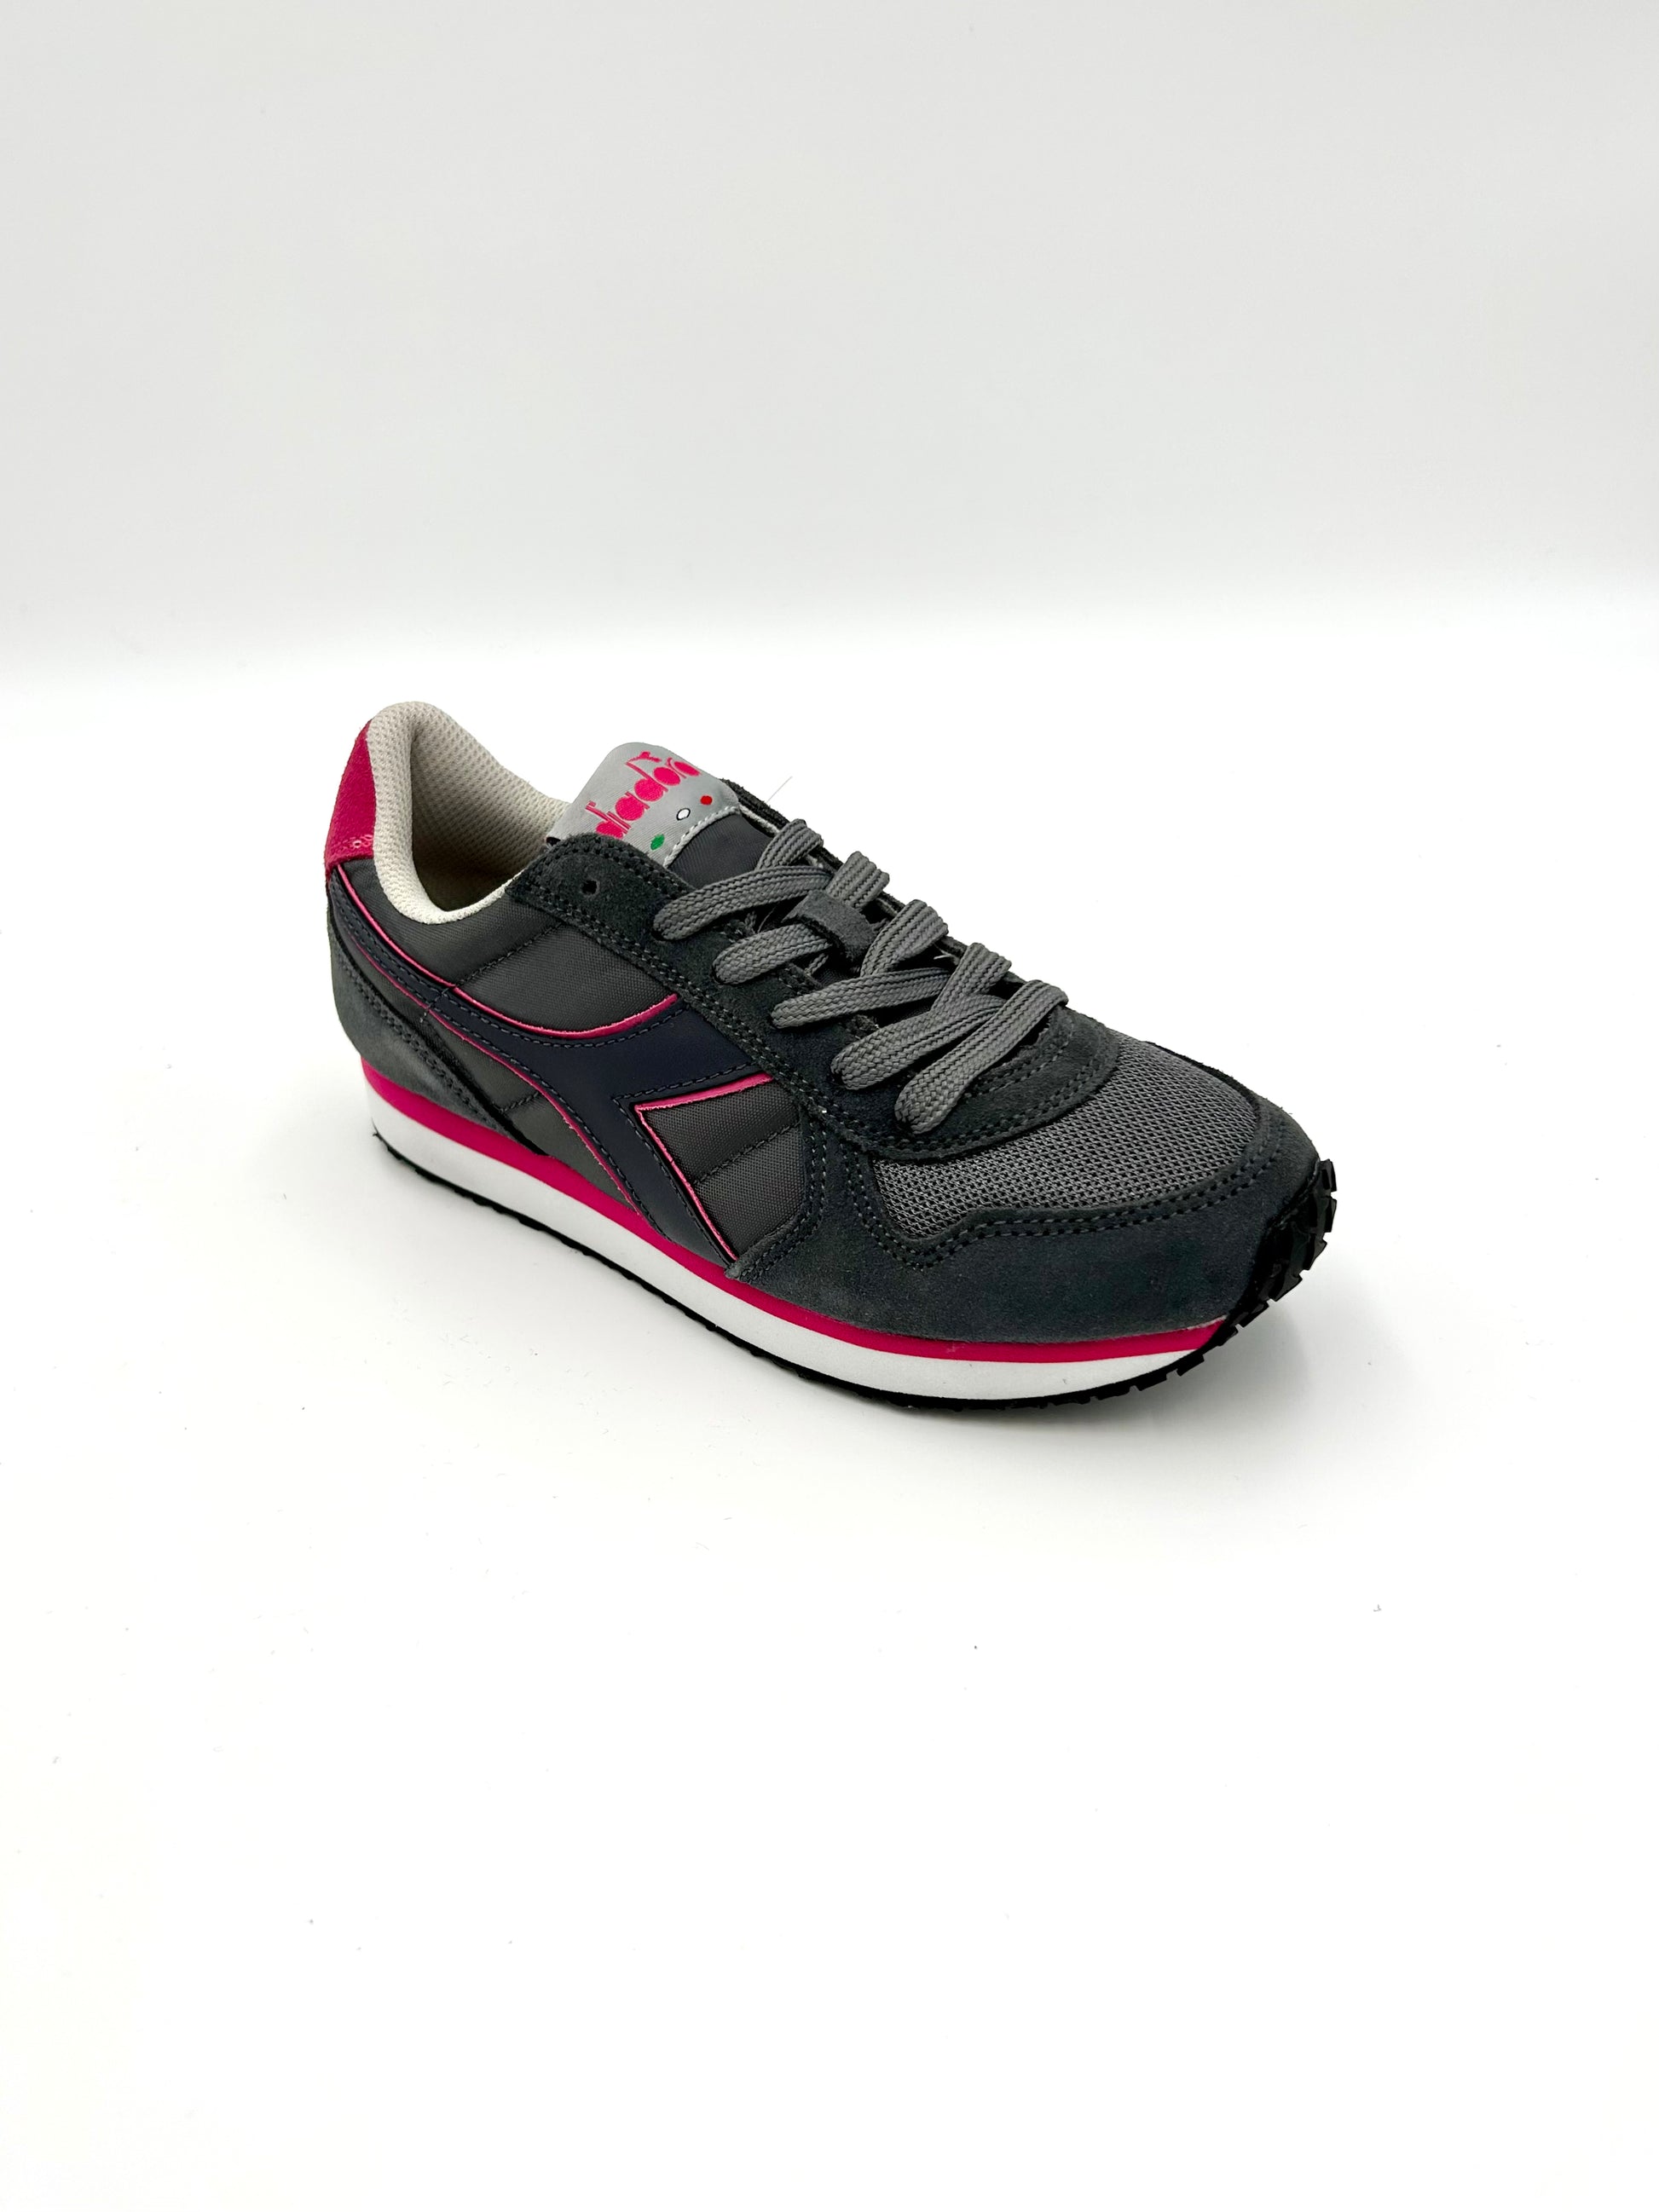 Diadora Sneakers K-run C - grey and fuxia - Diadora